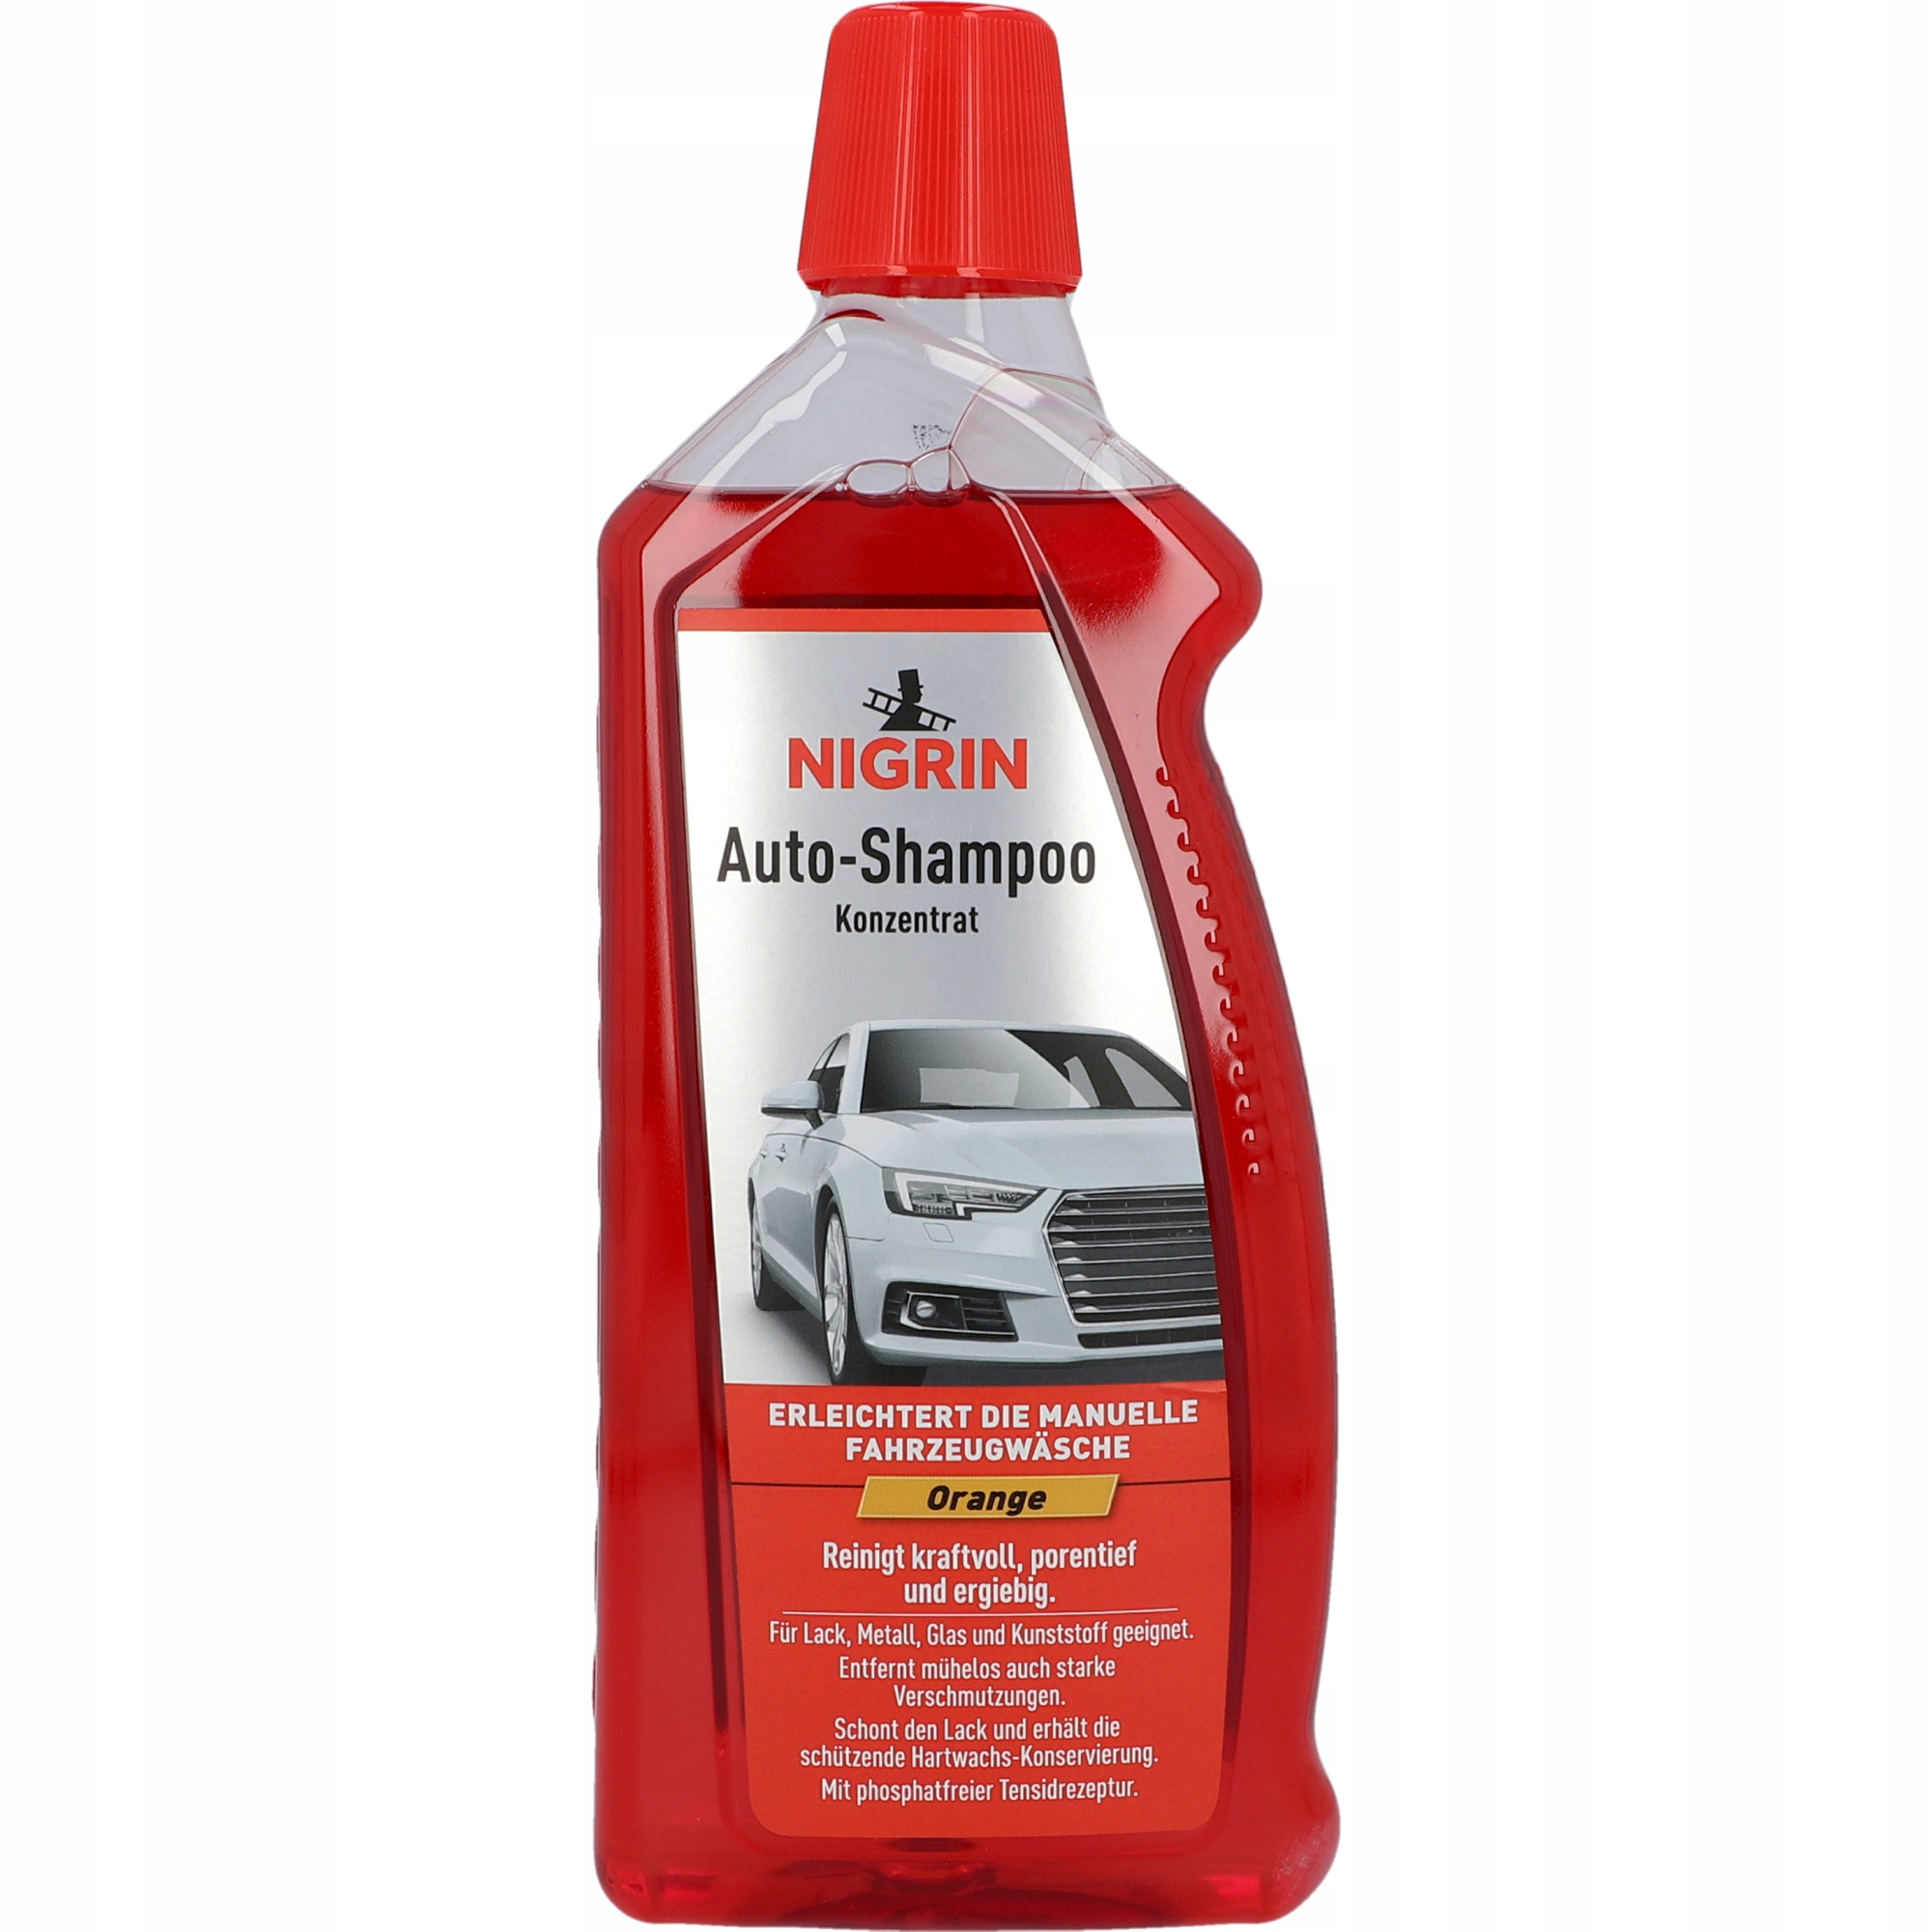 nigrin szampon samochodowy koncentrat 1000 ml